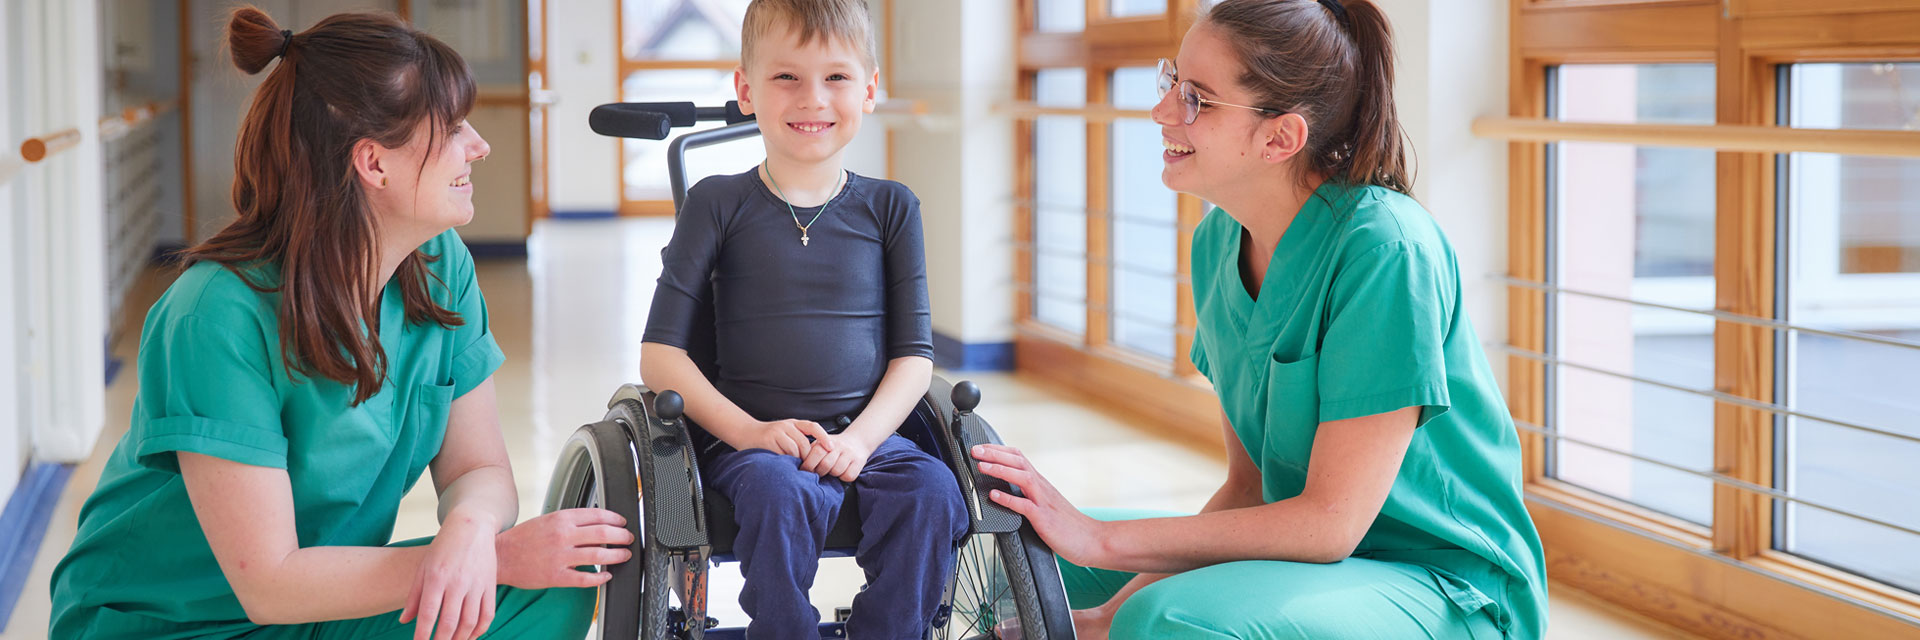 Bild: Zwei Pflegefachkräfte der Kinderklinik kommunizieren mit einem Jungen im Rollstuhl